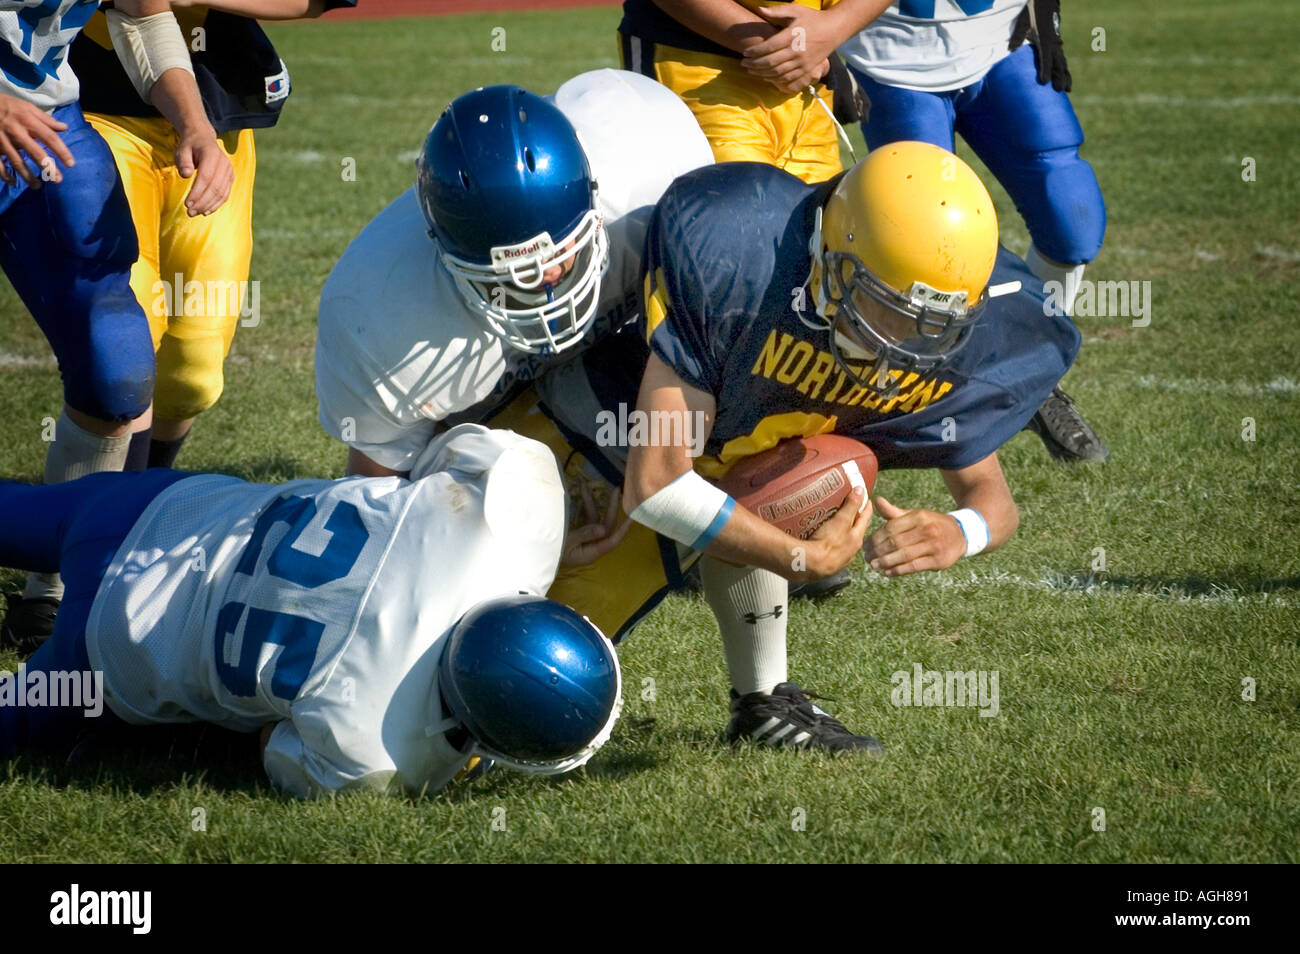 Acción de fútbol americano a nivel High School Port Huron Michigan Foto de stock